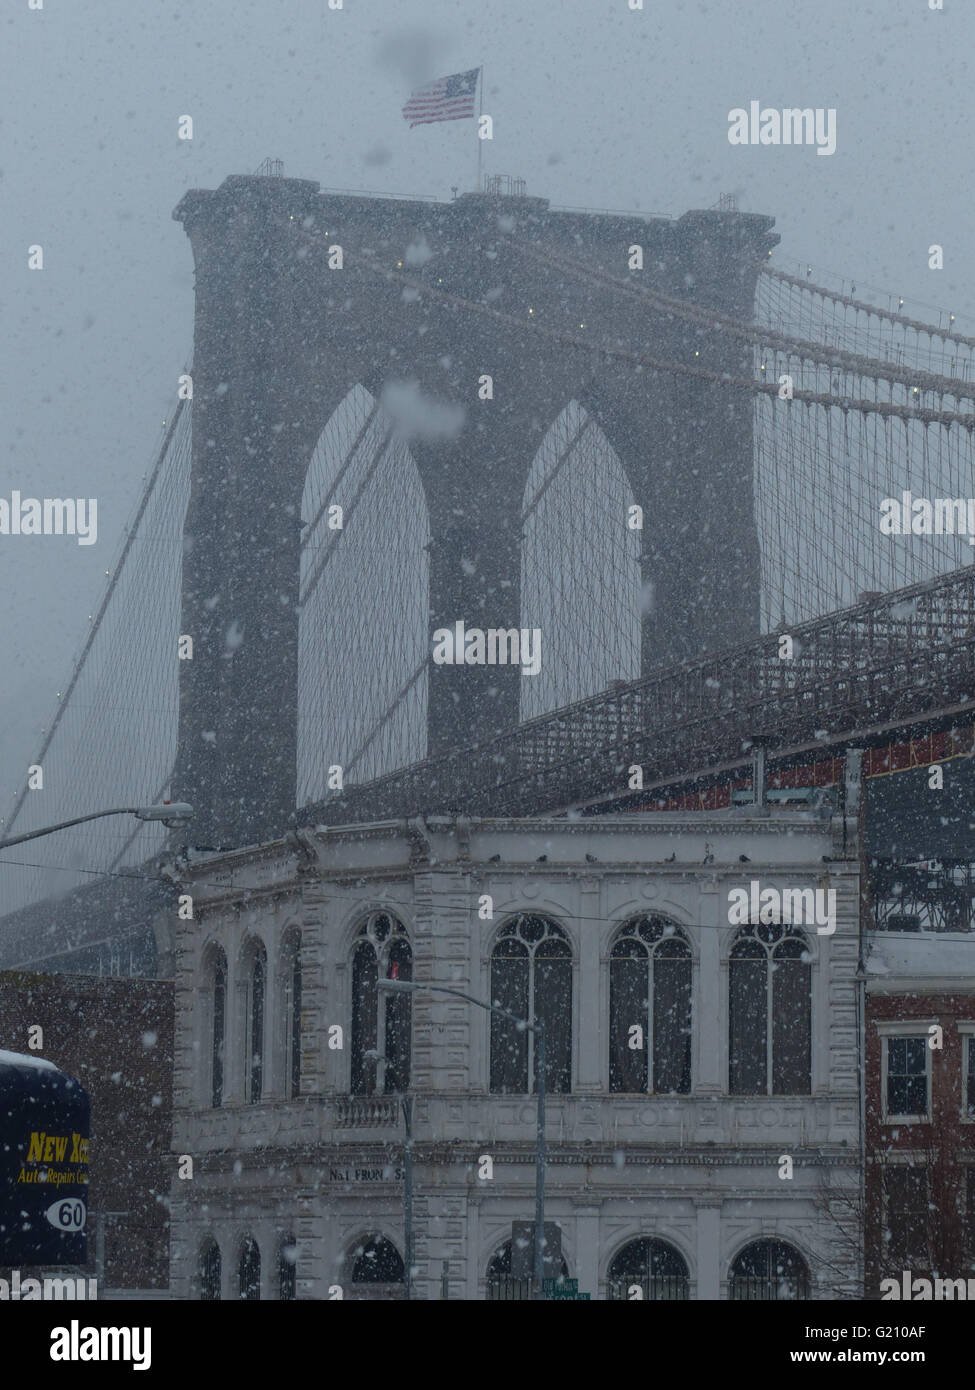 New York - Etats-Unis. 2014 Tempête de neige a été l'une des plus dures de l'histoire récente. Pont de Brooklyn peut difficilement être vu Banque D'Images